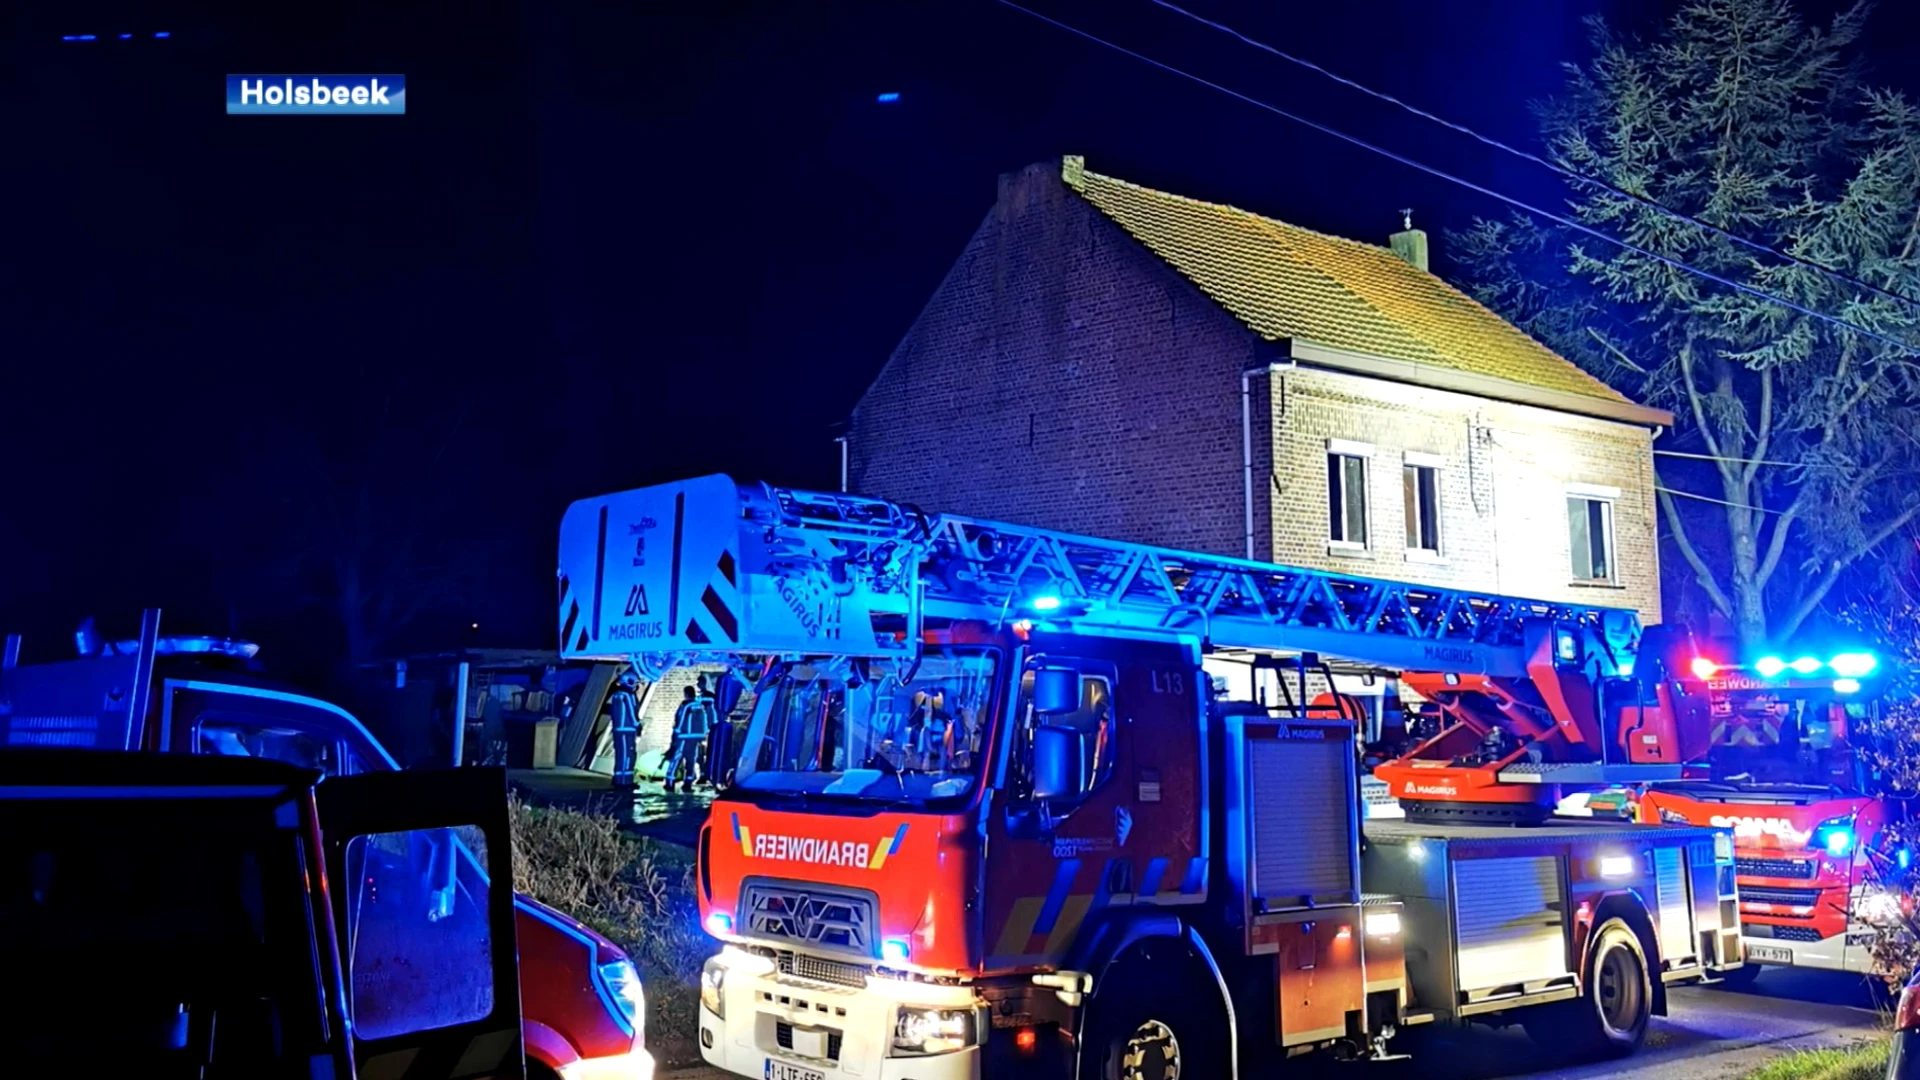 Man raakt zwaar verbrand bij uitslaande brand in Holsbeek, buurtbewoners starten inzamelactie: "Ze zijn echt alles kwijt"